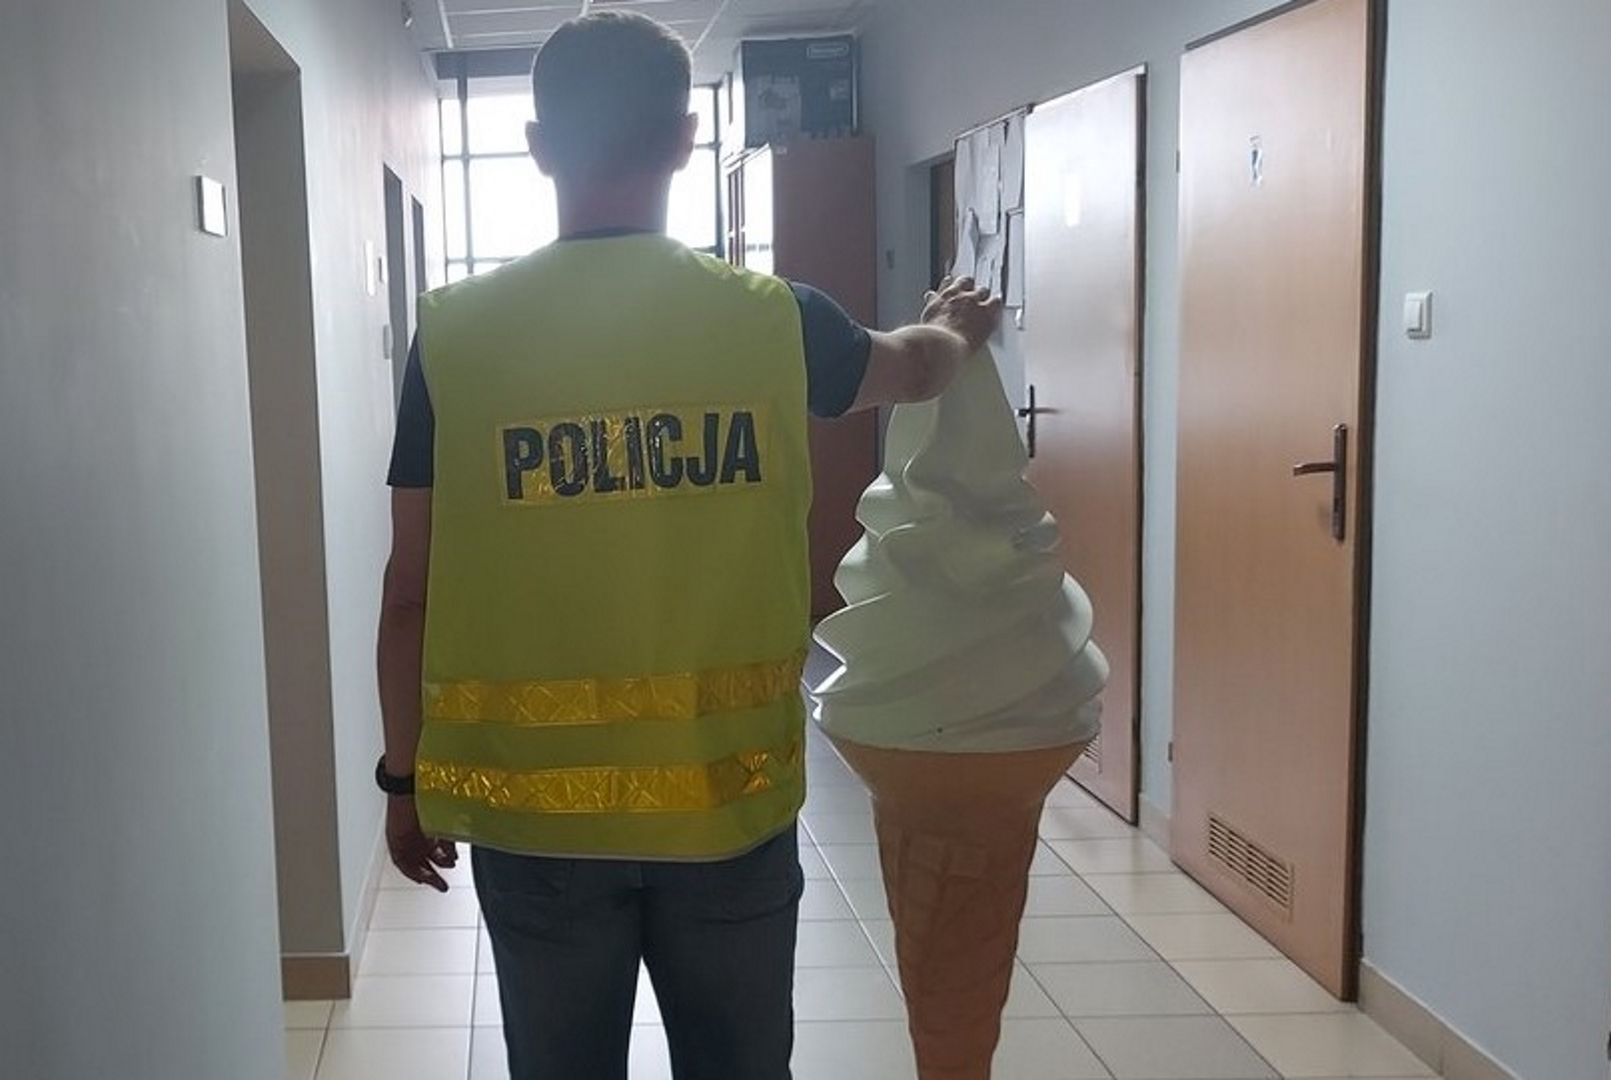 Ukradł loda o wartości 1 tys. zł. Grozi mu 5 lat więzienia